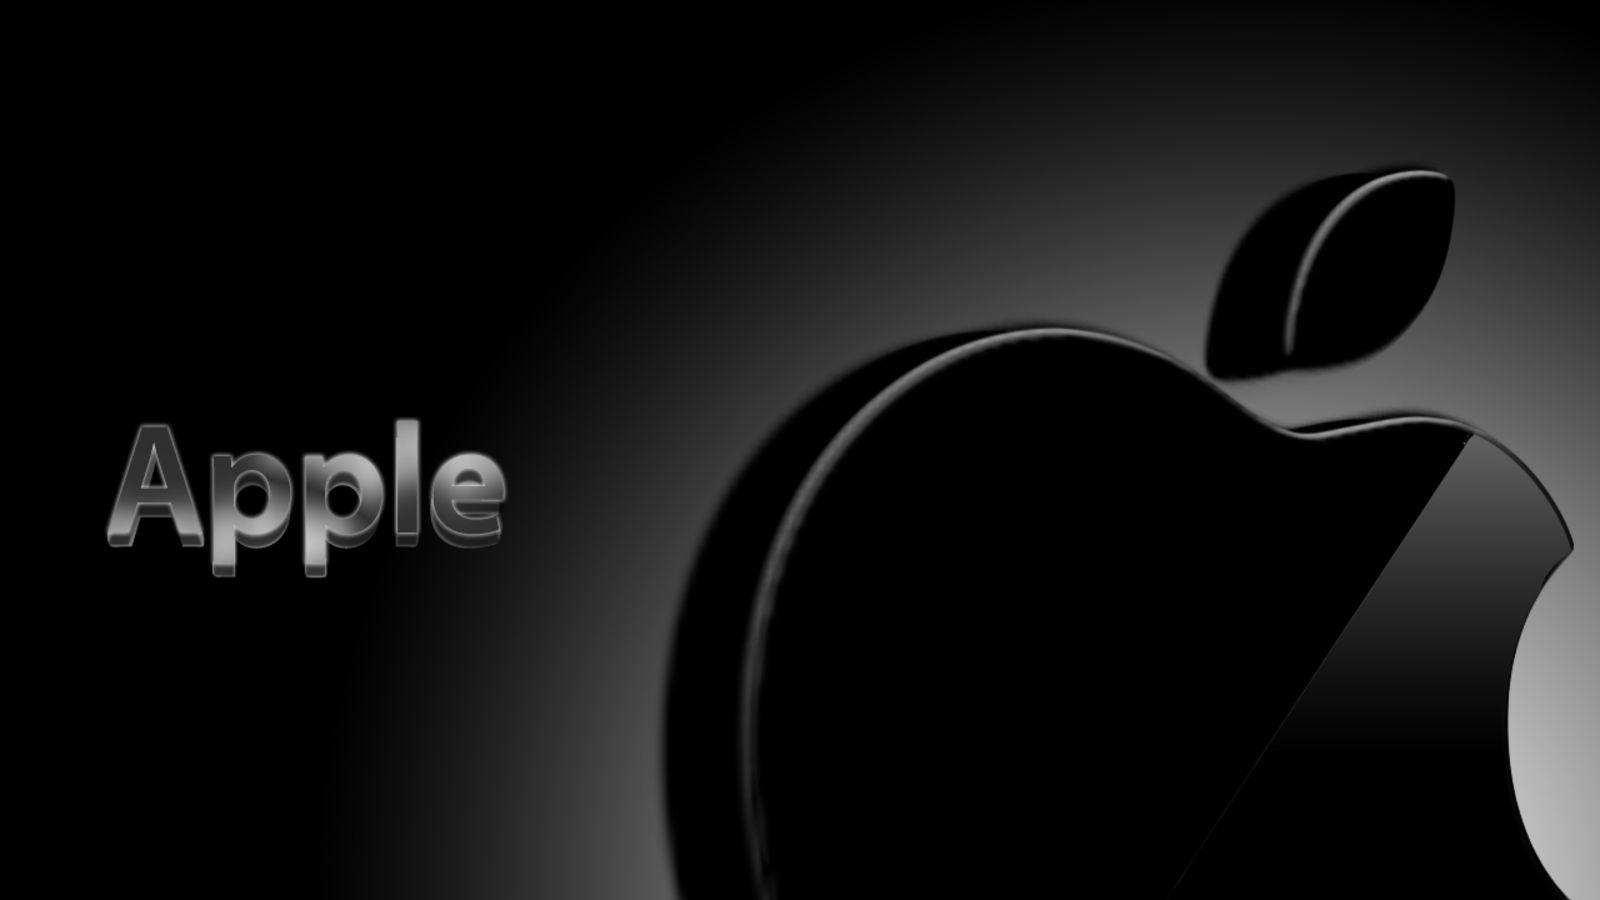 All Black Apple Logo - Black Apple Logo Wallpaper